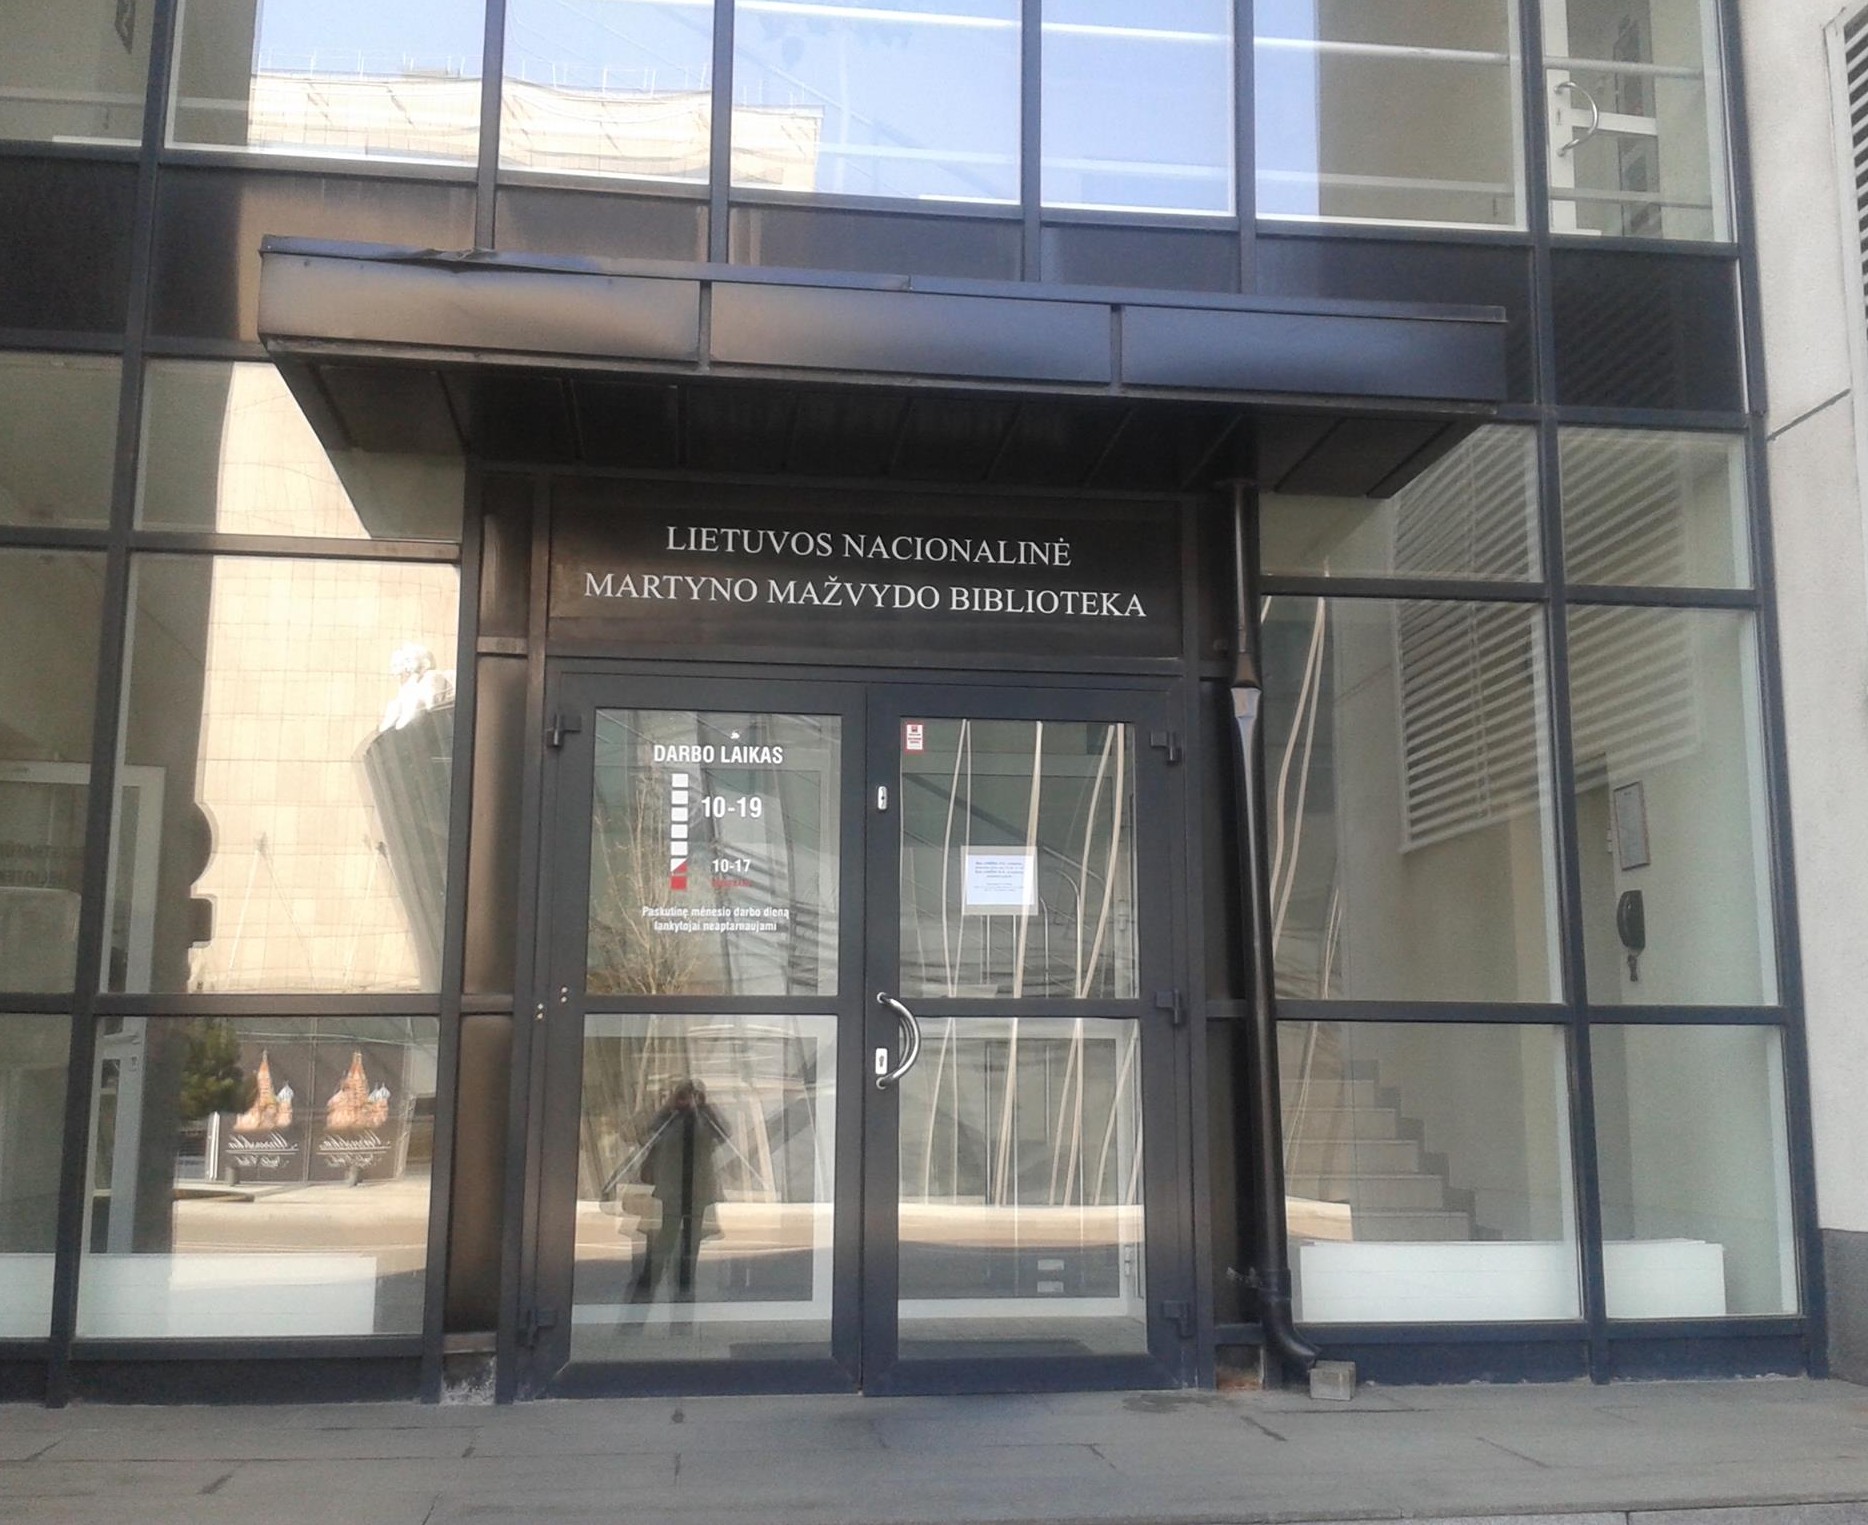 Nacionalinė biblioteka savo atsinaujintas erdves atvėrė visuomenei | Lietuvos nacionalinės Martyno Mažvydo bibliotekos nuotr.